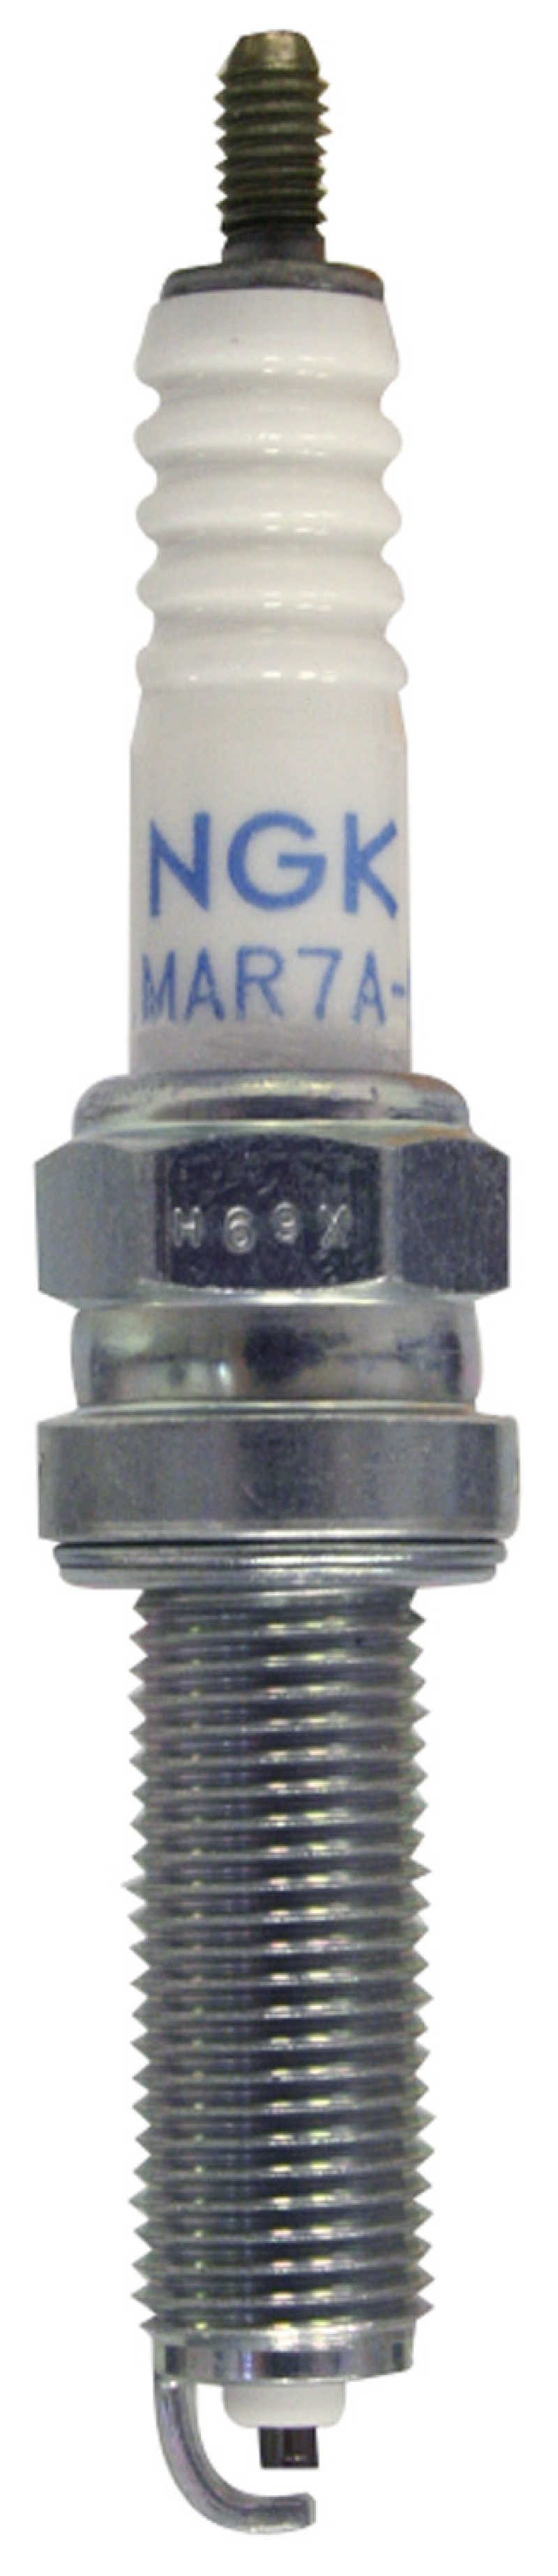 NGK Standard Spark Plug Box of 10 (LMAR7A-9) - 4908